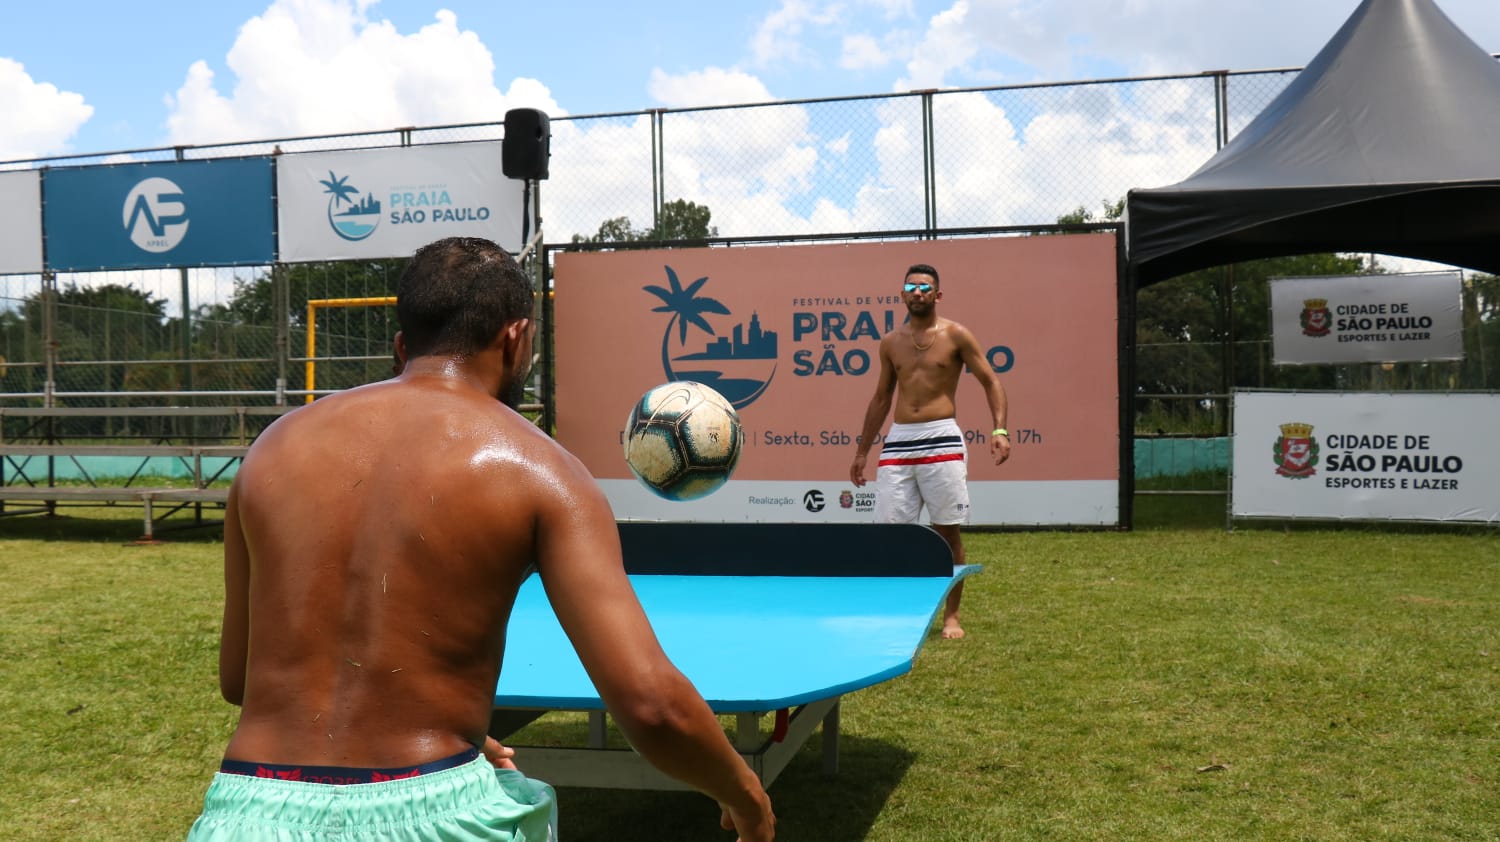 Na imagem, participantes do Festival de Verão Praia São Paulo.